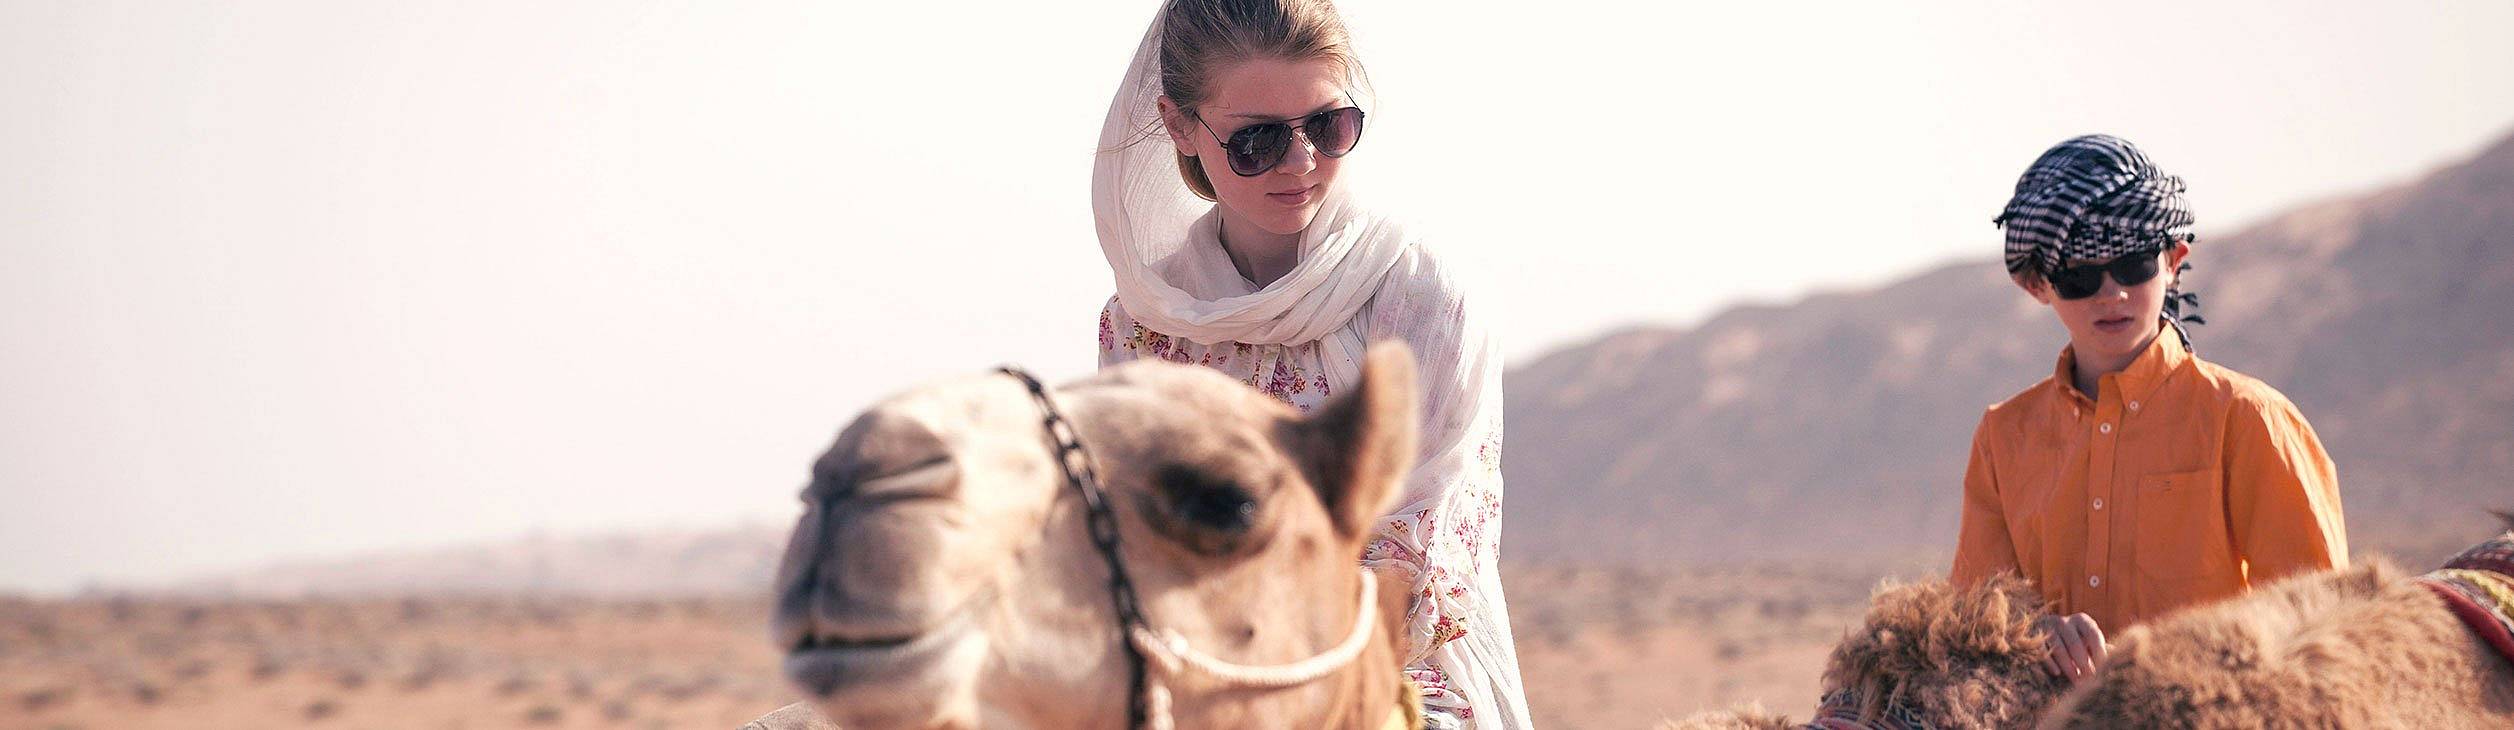 Oman Reisen mit Kindern